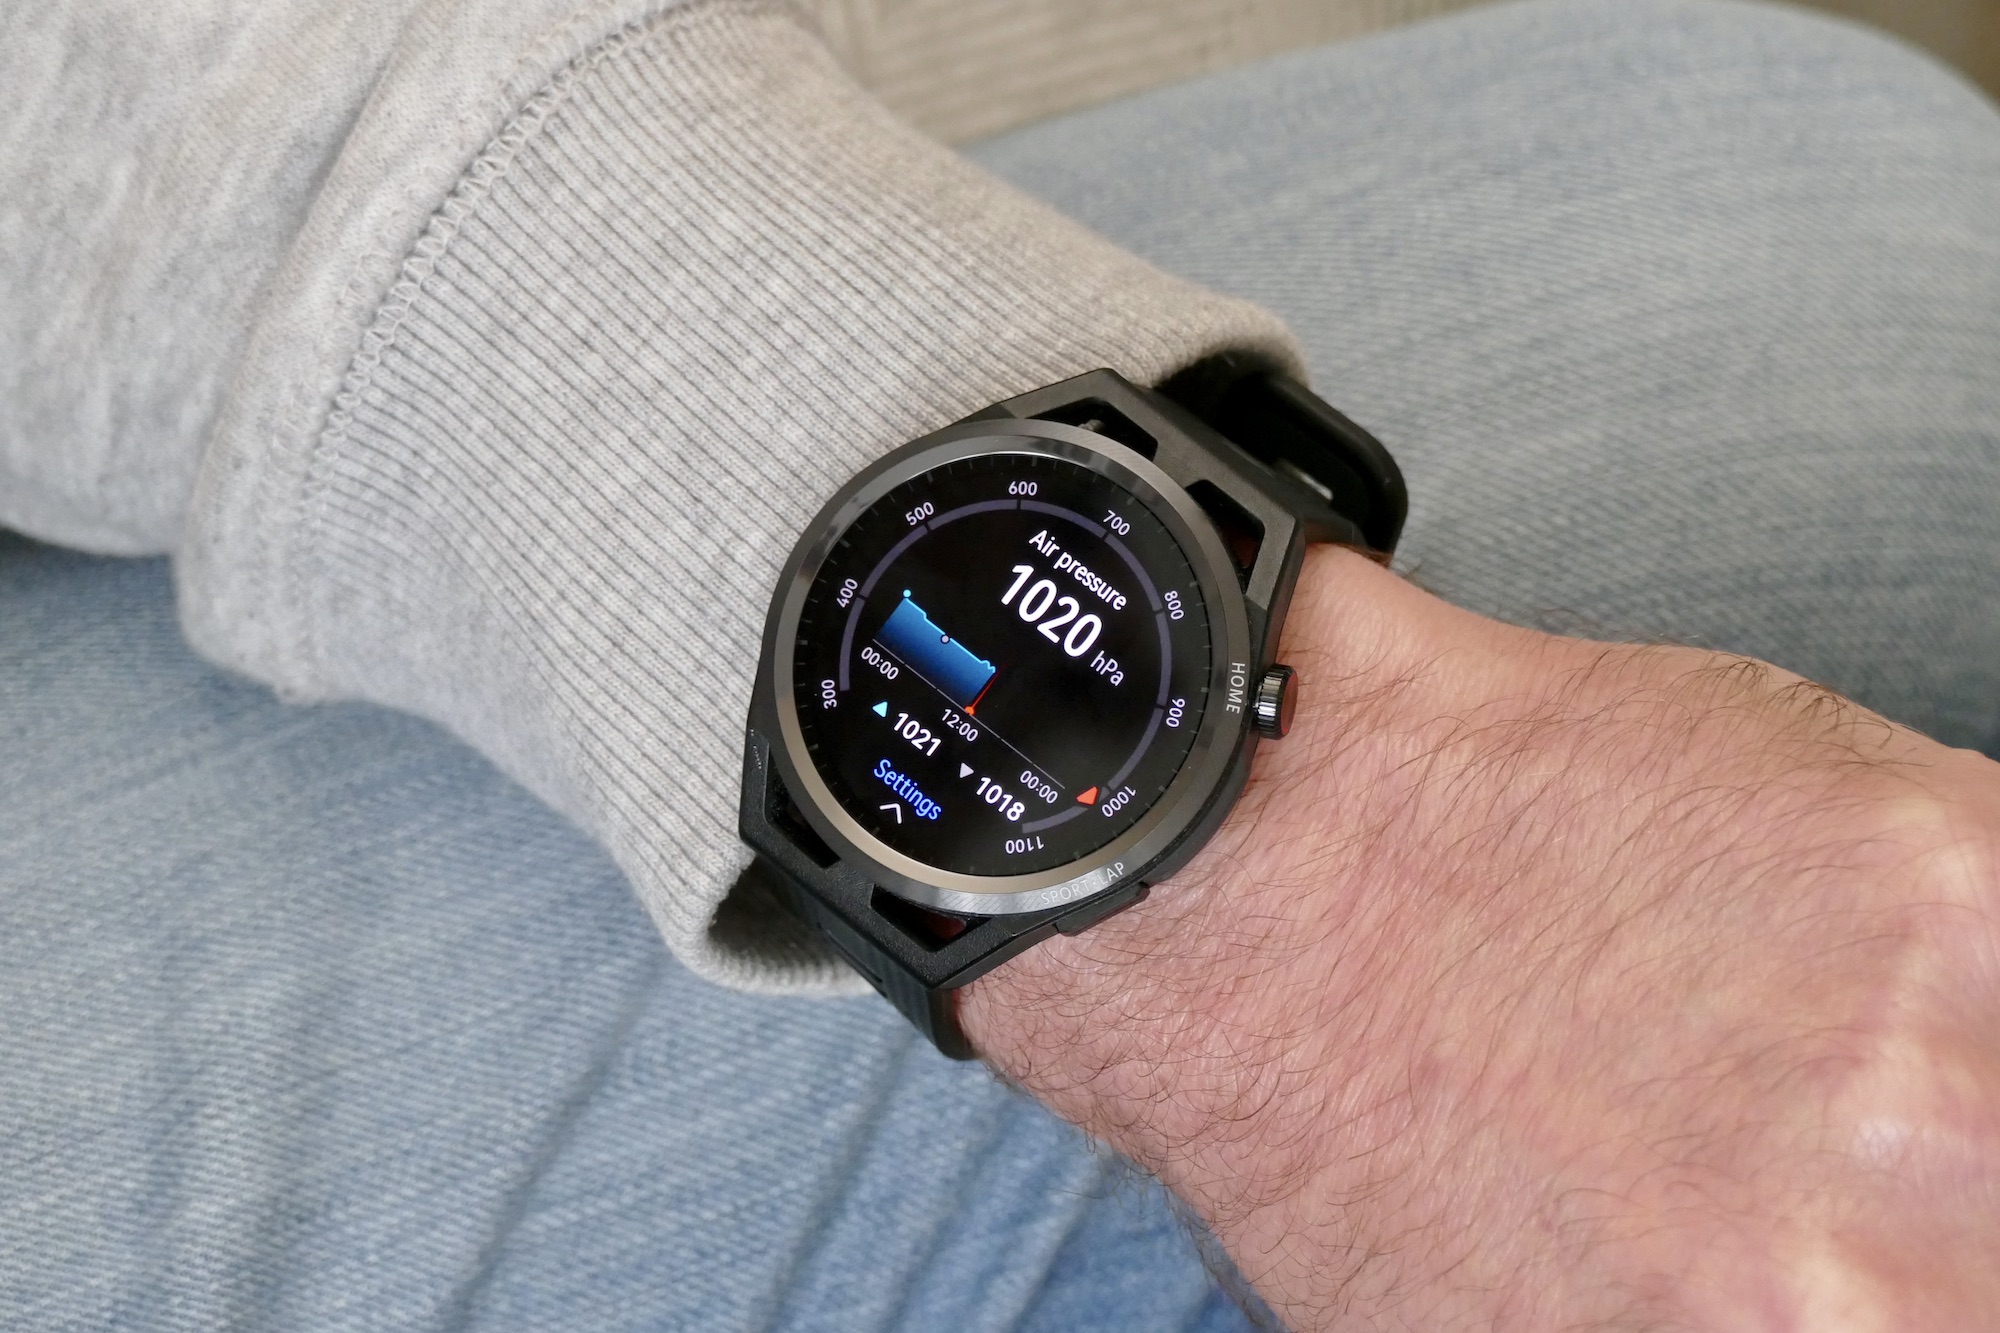 Huawei Watch GT Runner air pressure display.